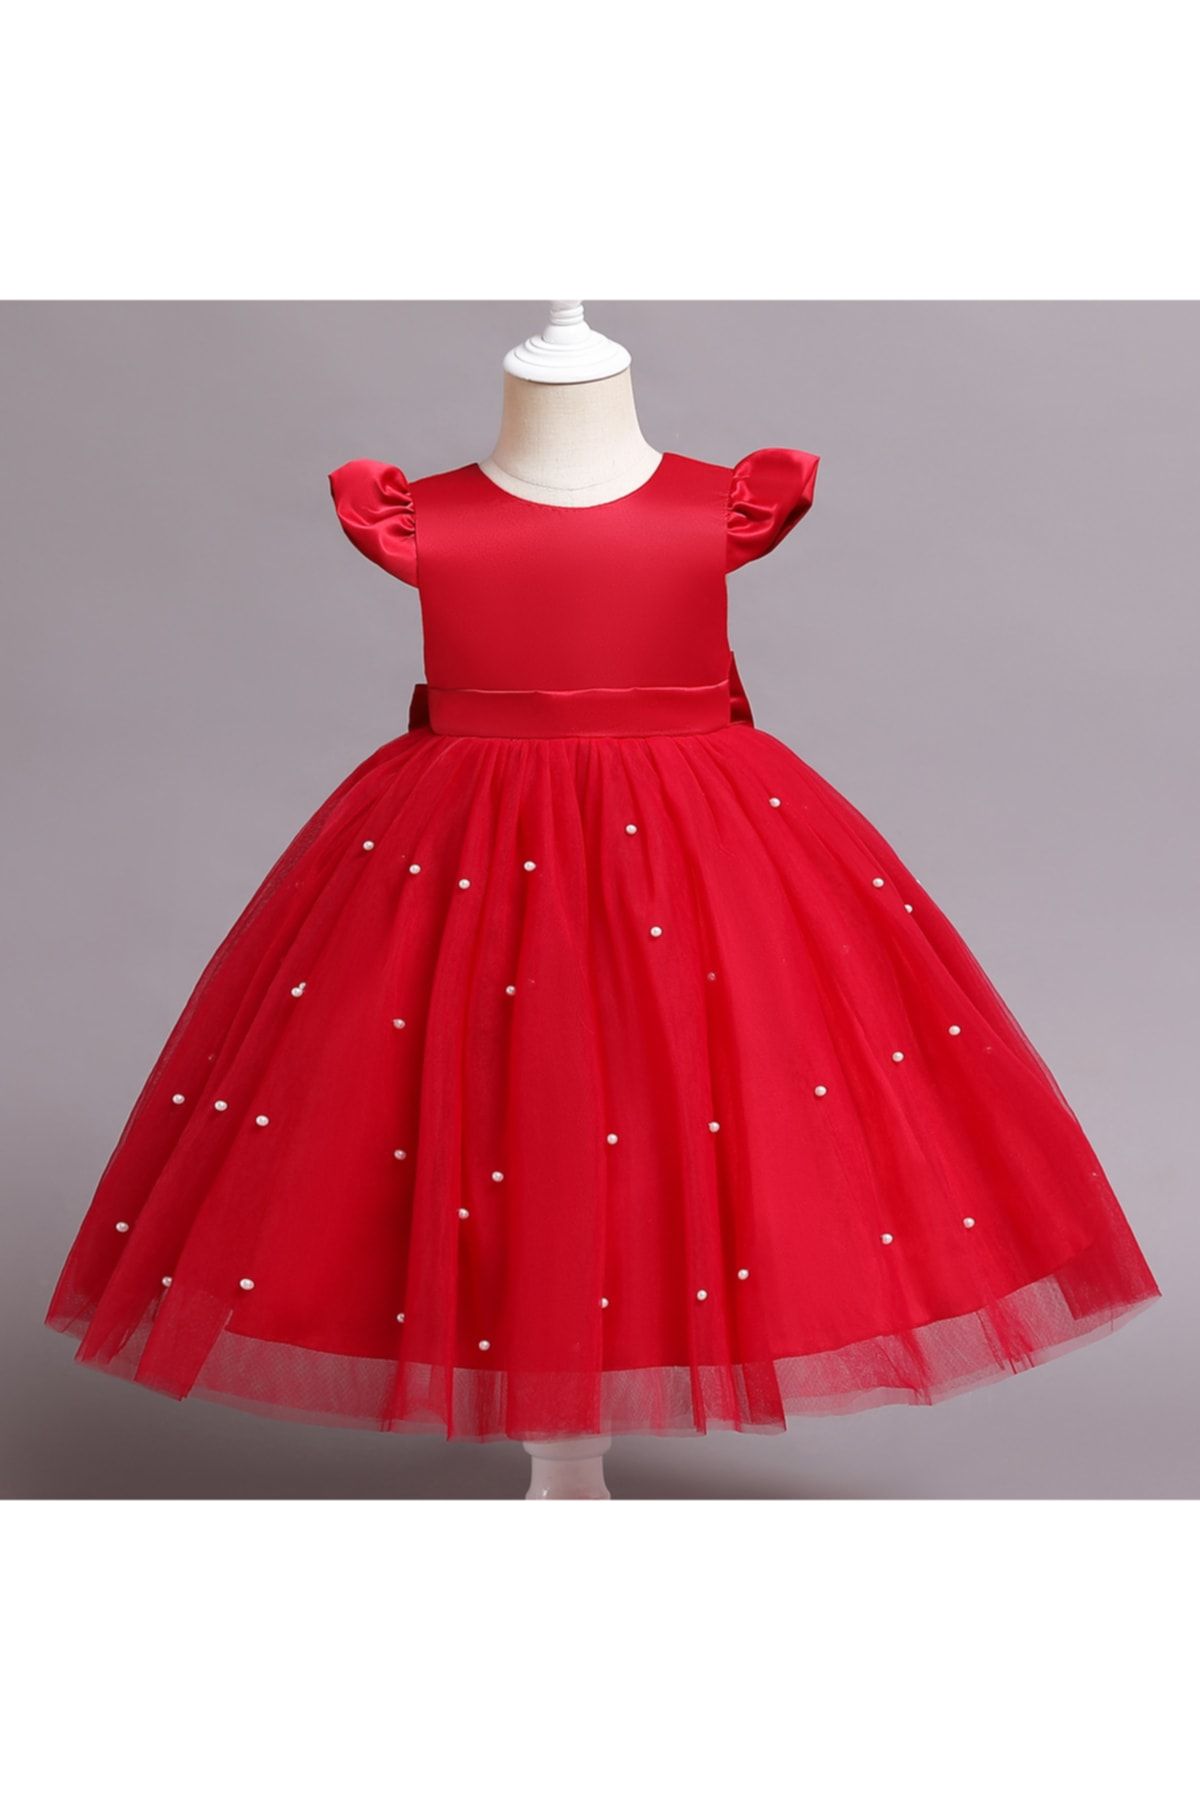 NSM Kidslife Kurdela Detaylı Kırmızı Kız Çocuk Elbise